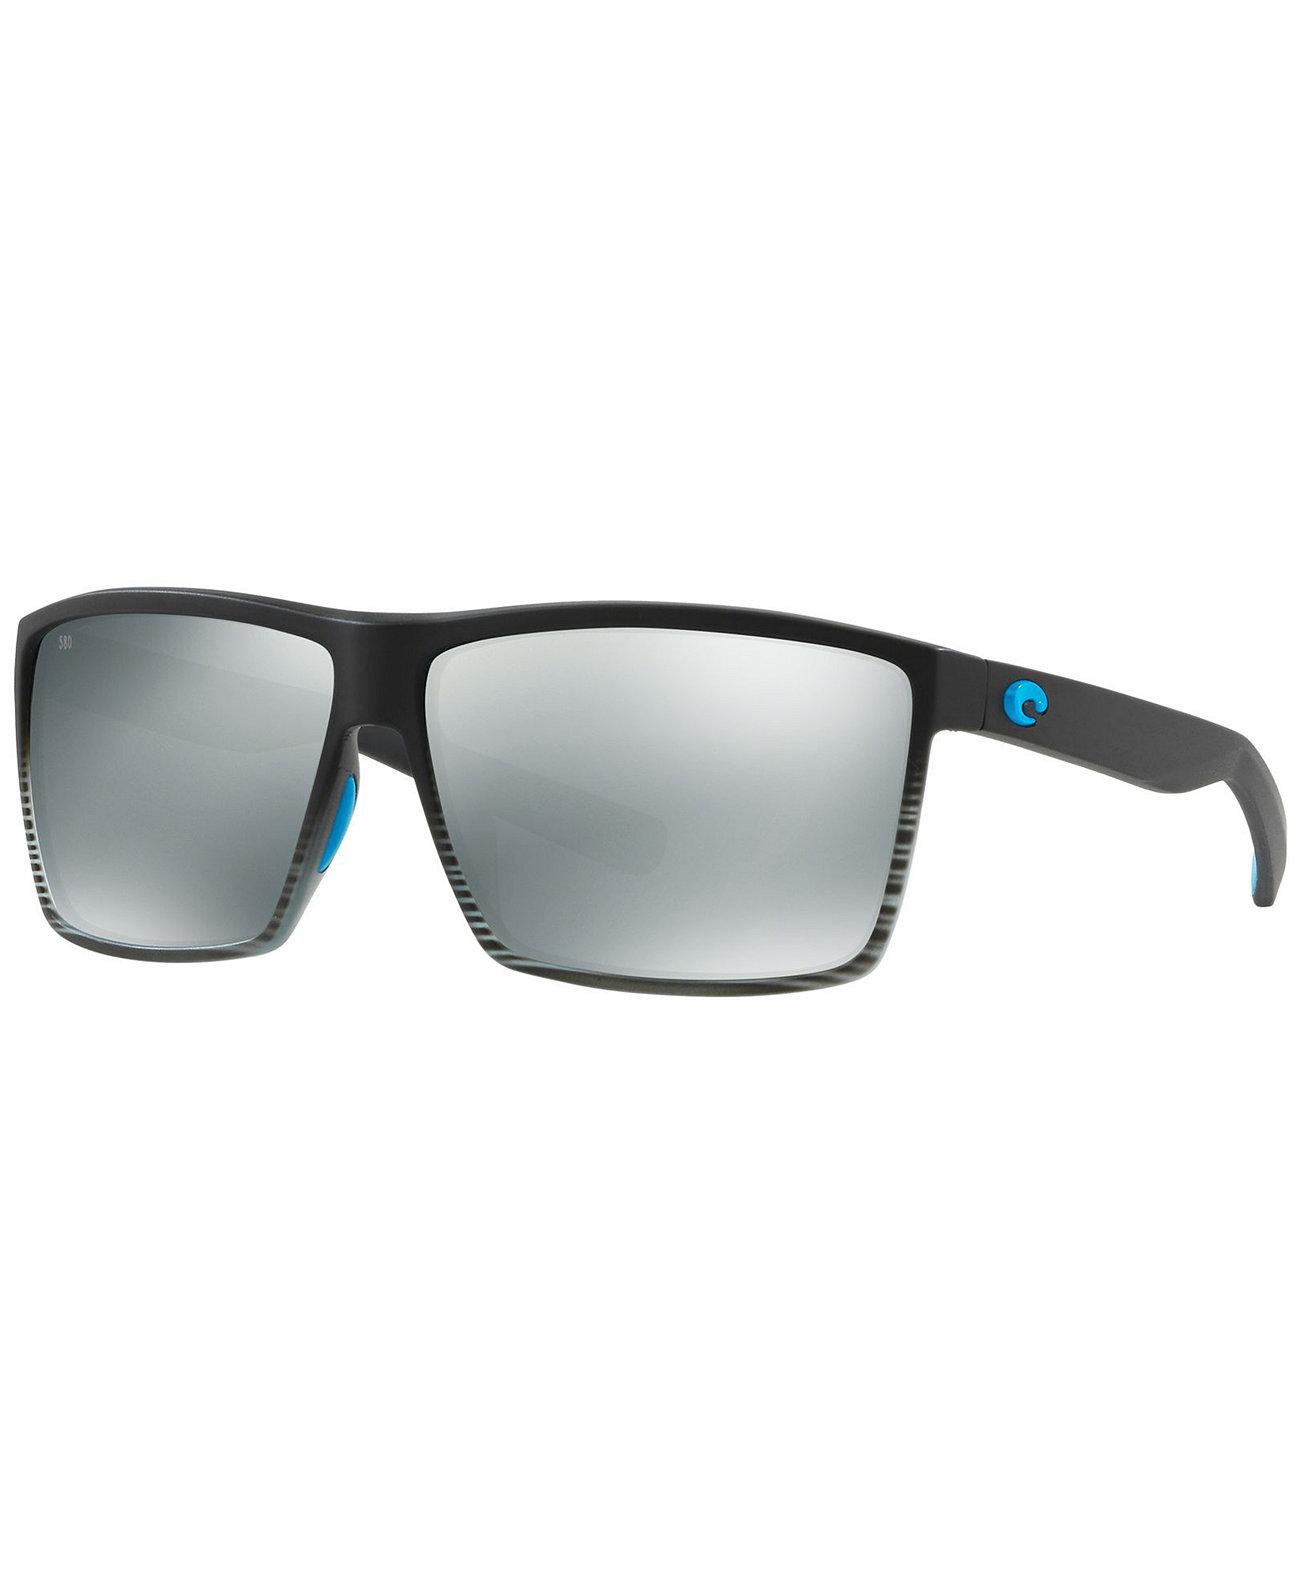 Поляризованные солнцезащитные очки, RINCON 64 COSTA DEL MAR